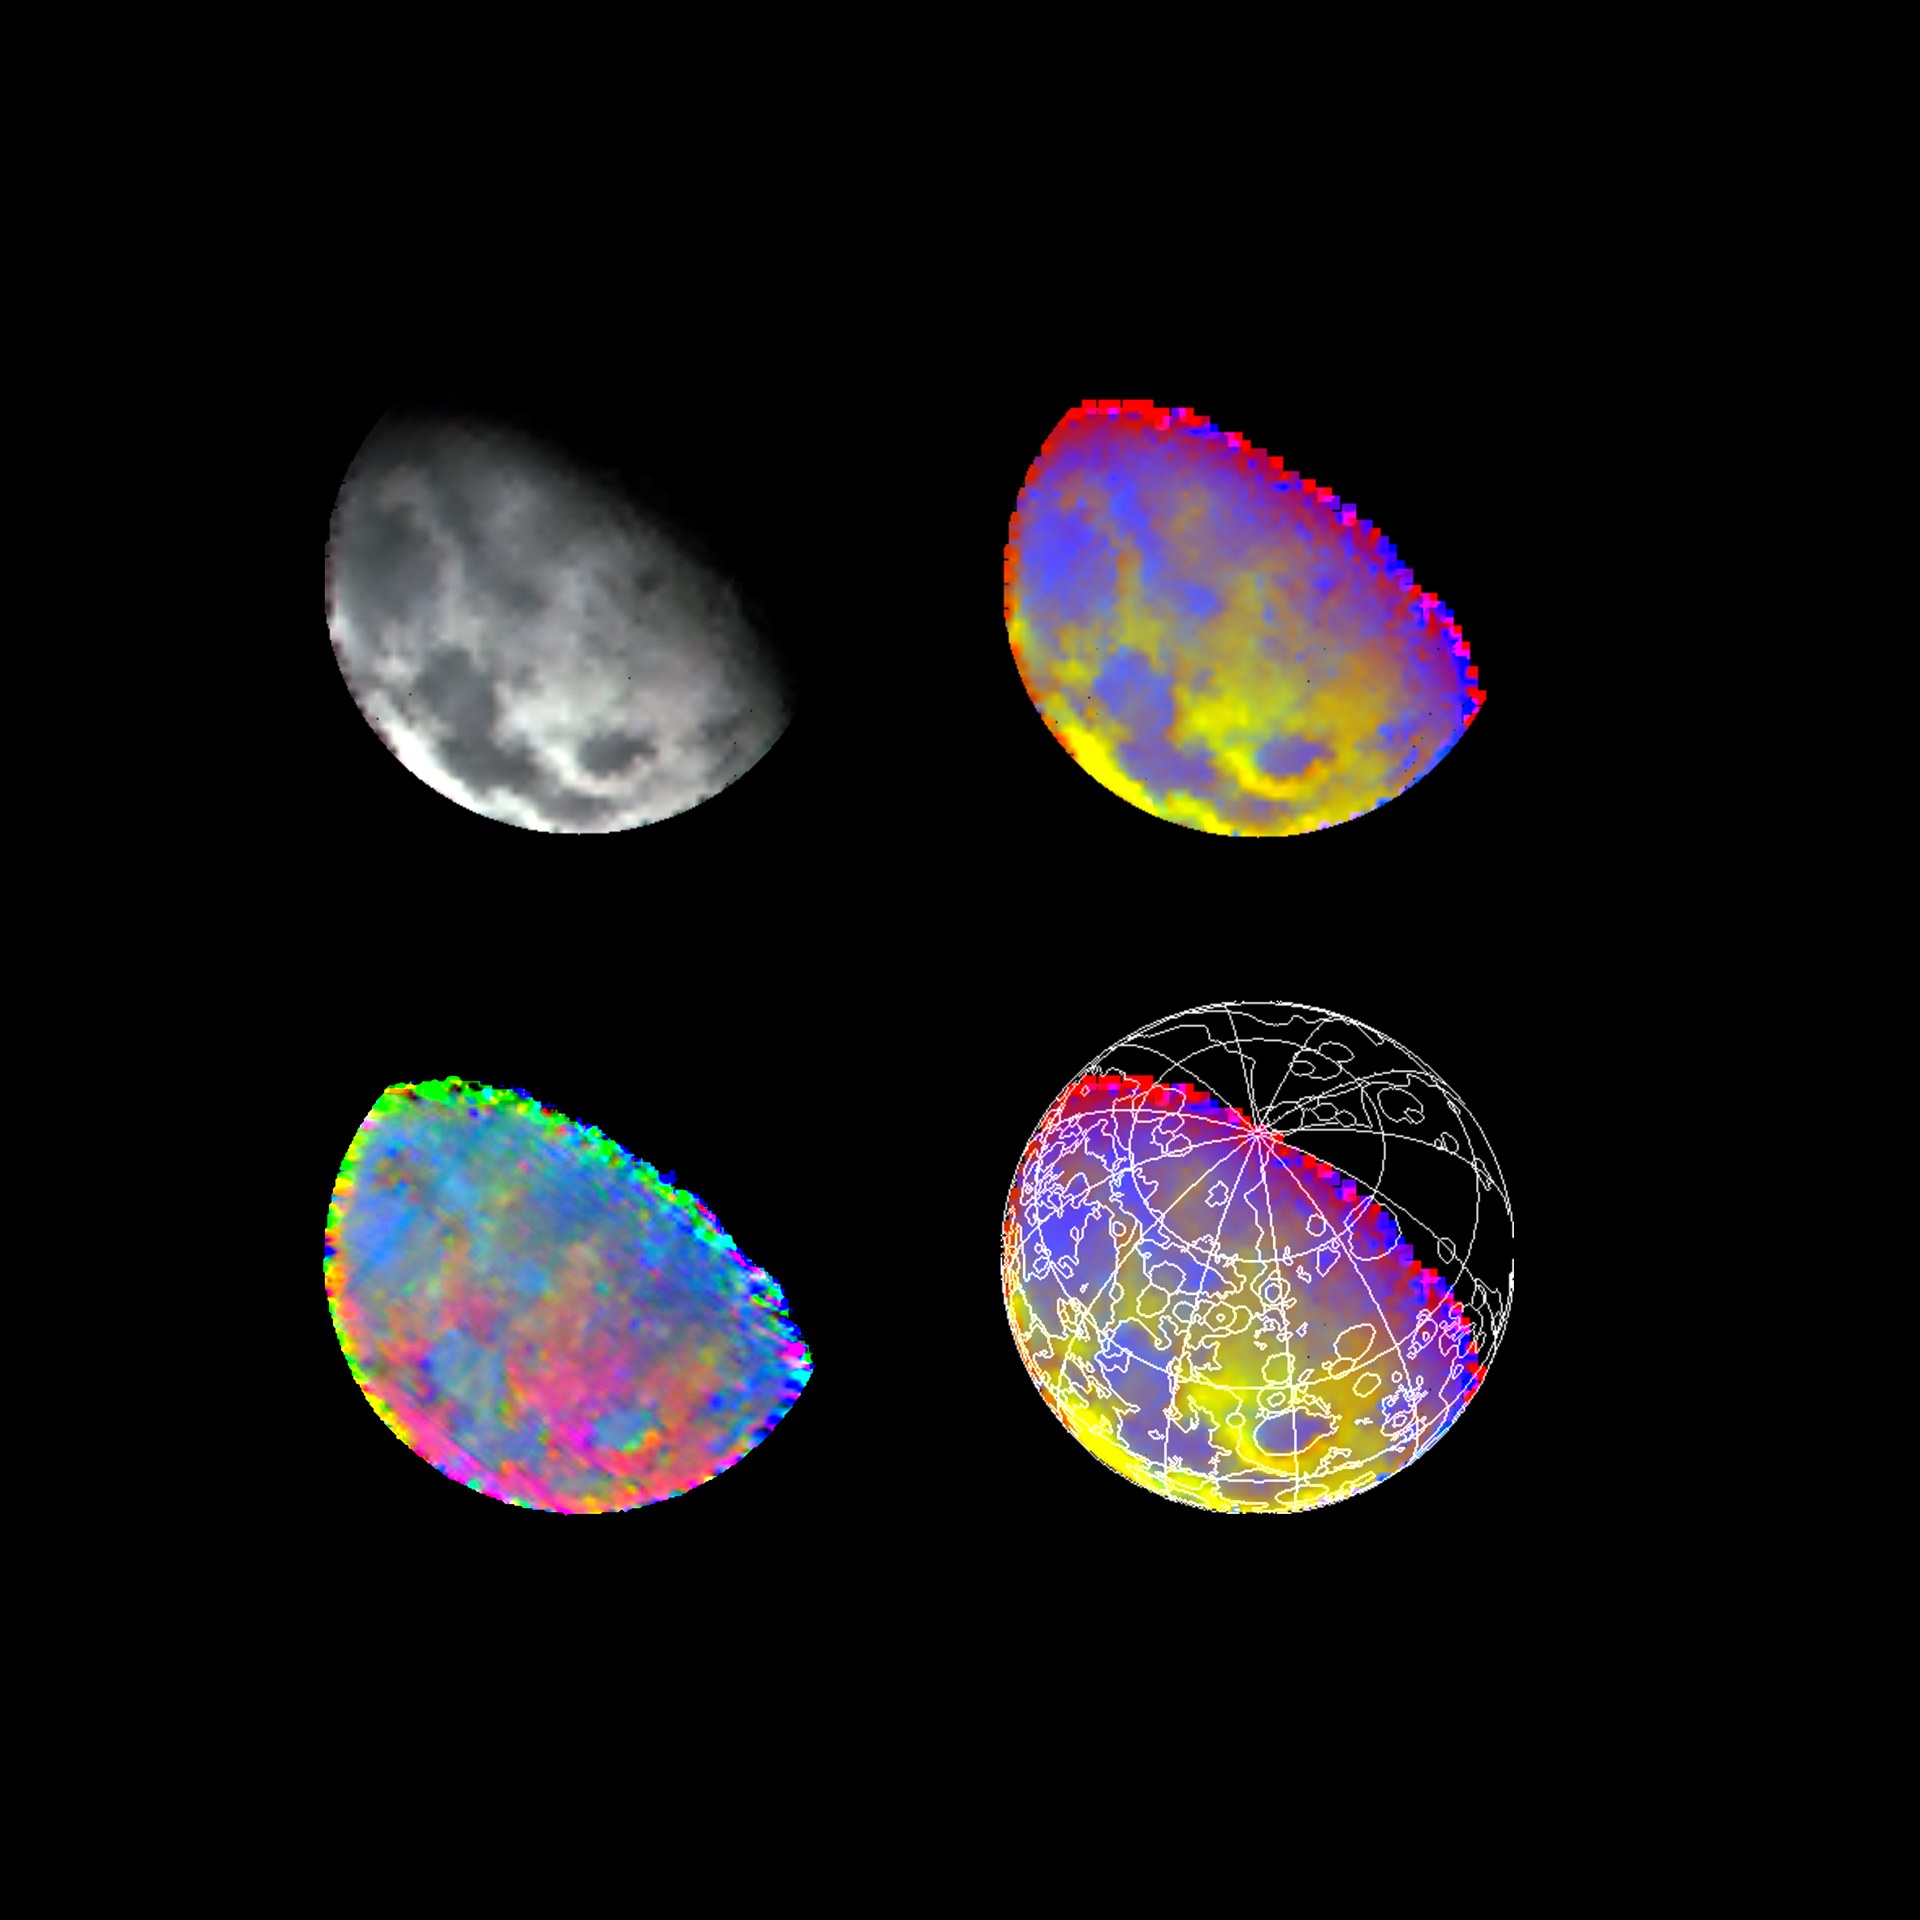 Moon in near infrared